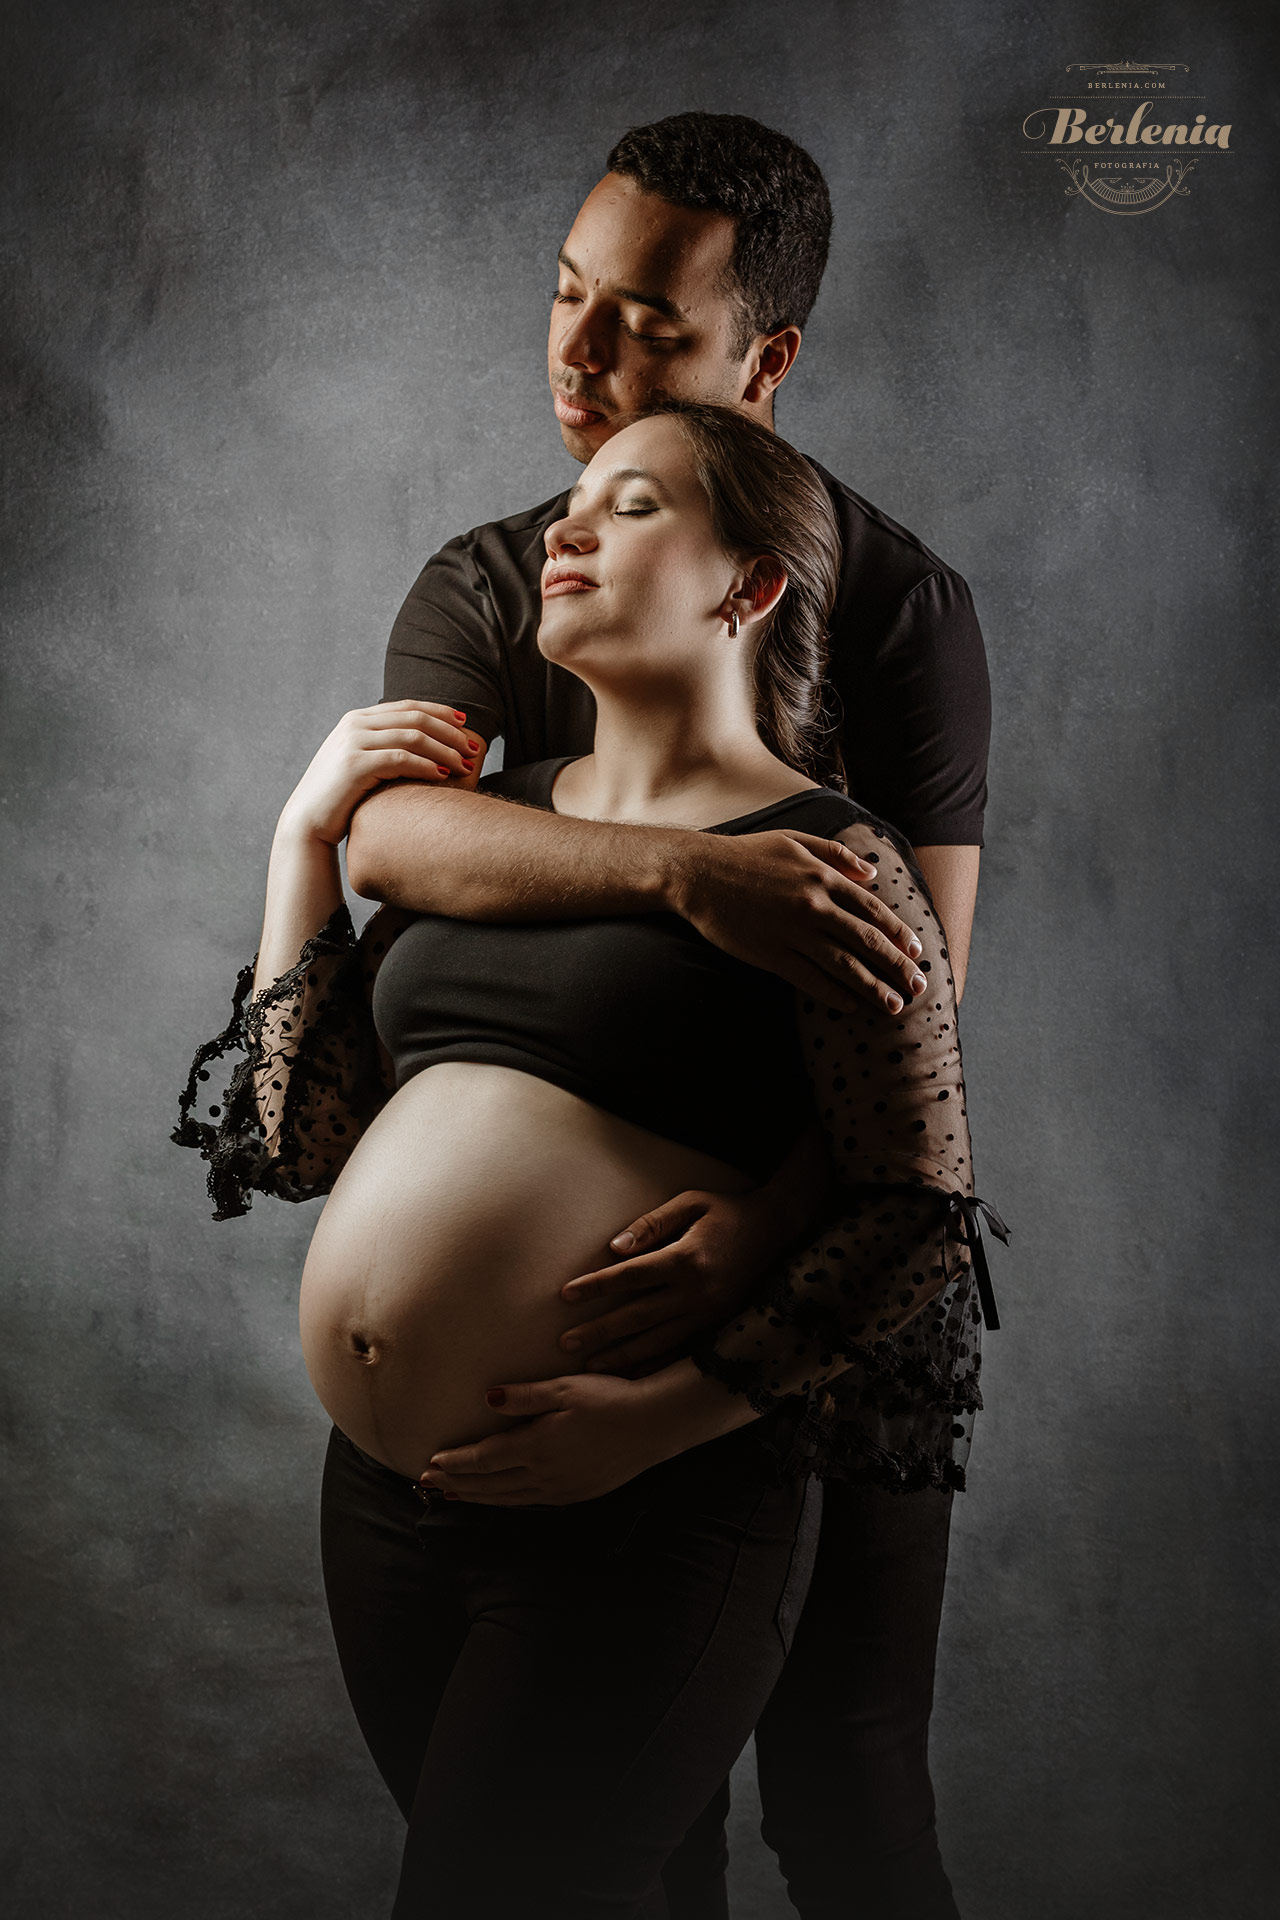 Fotografía de embarazo en estudio con pareja - Sesión de fotos embarazada - Villa Urquiza, CABA, Buenos Aires, Argentina - Berlenia Fotografía - 10